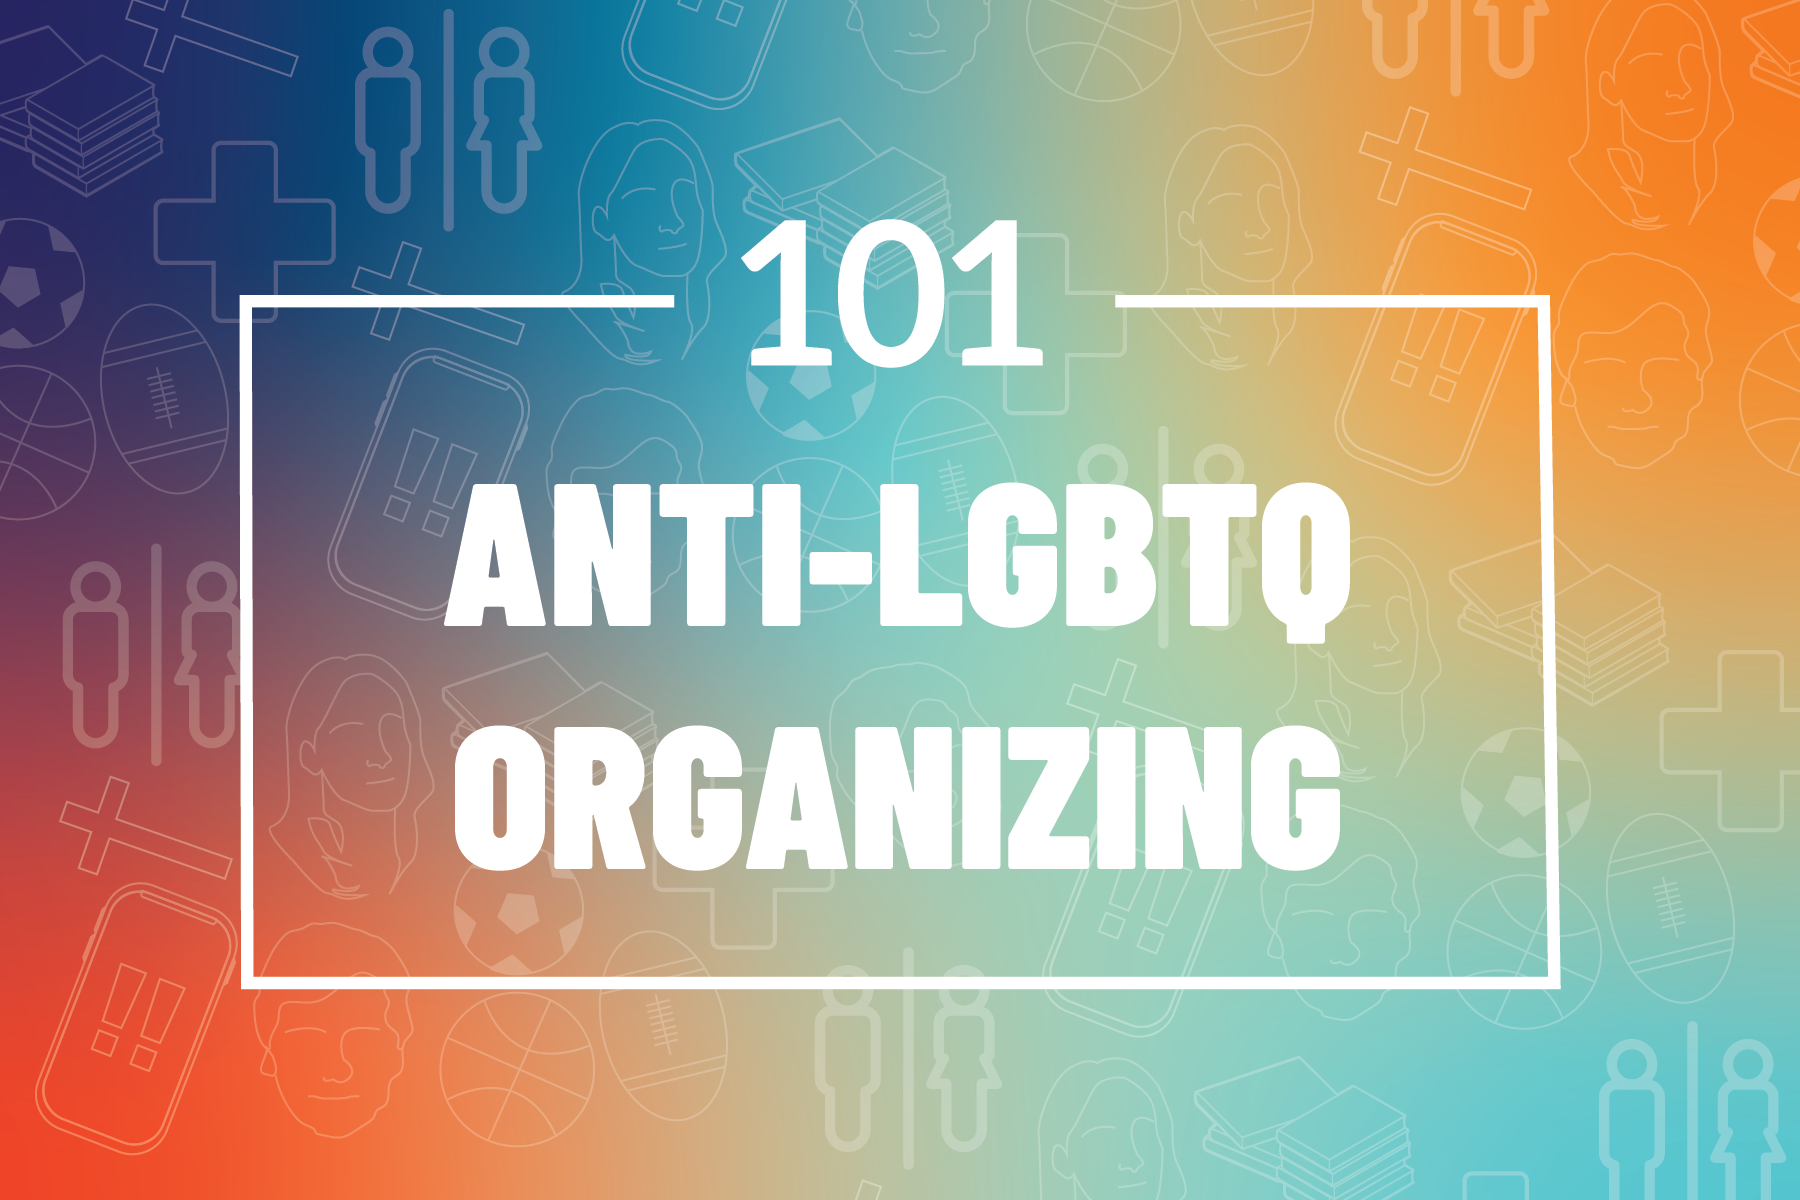 101: Anti-LGBTQ Organizing